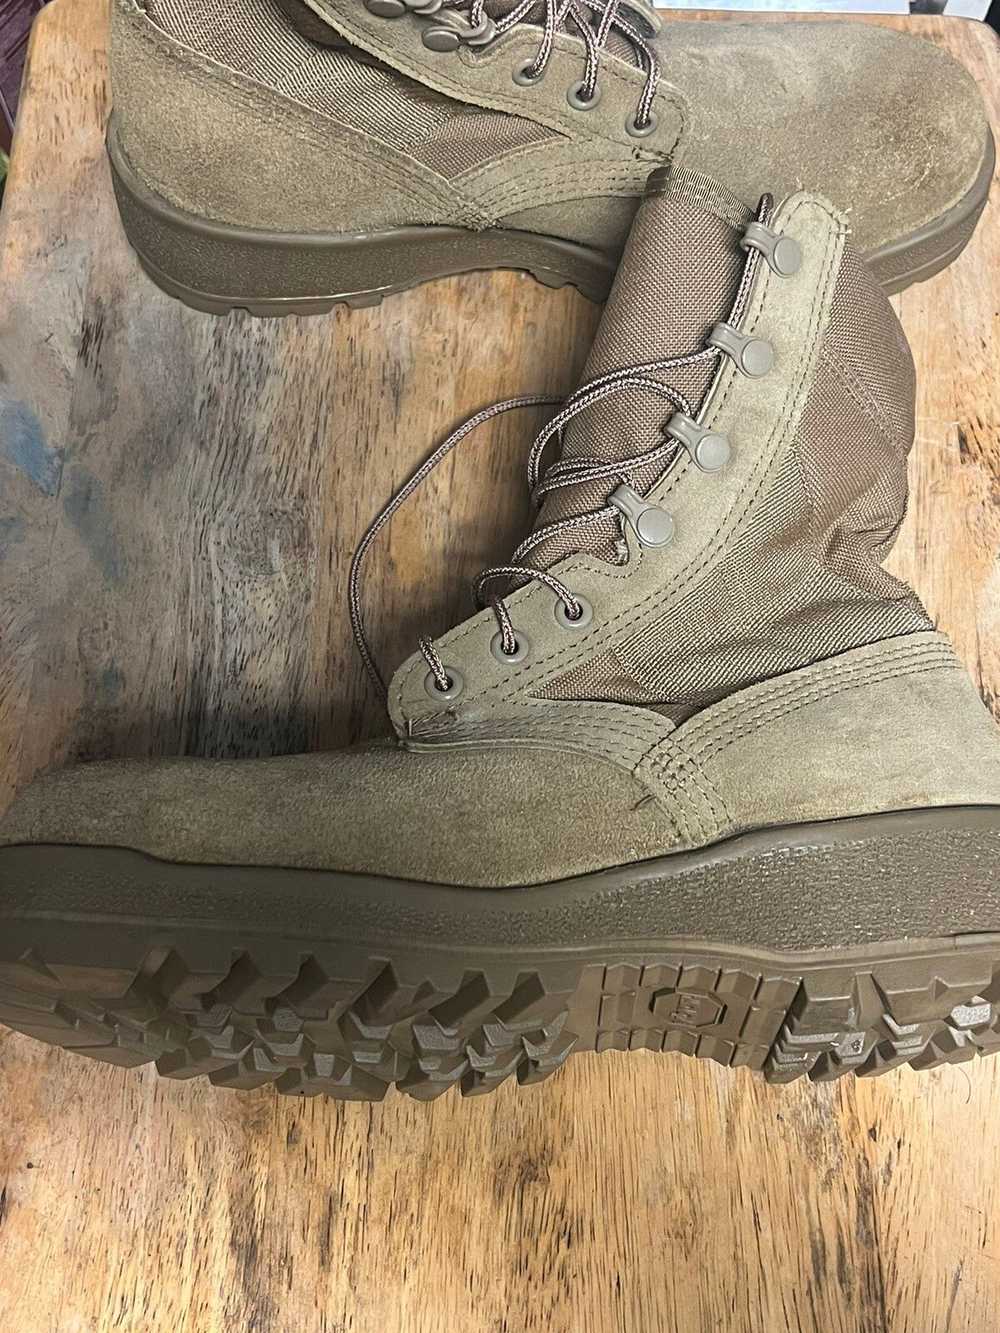 Altama Altama Gore-tex Combat Boots Size 7w SPE1C… - image 3